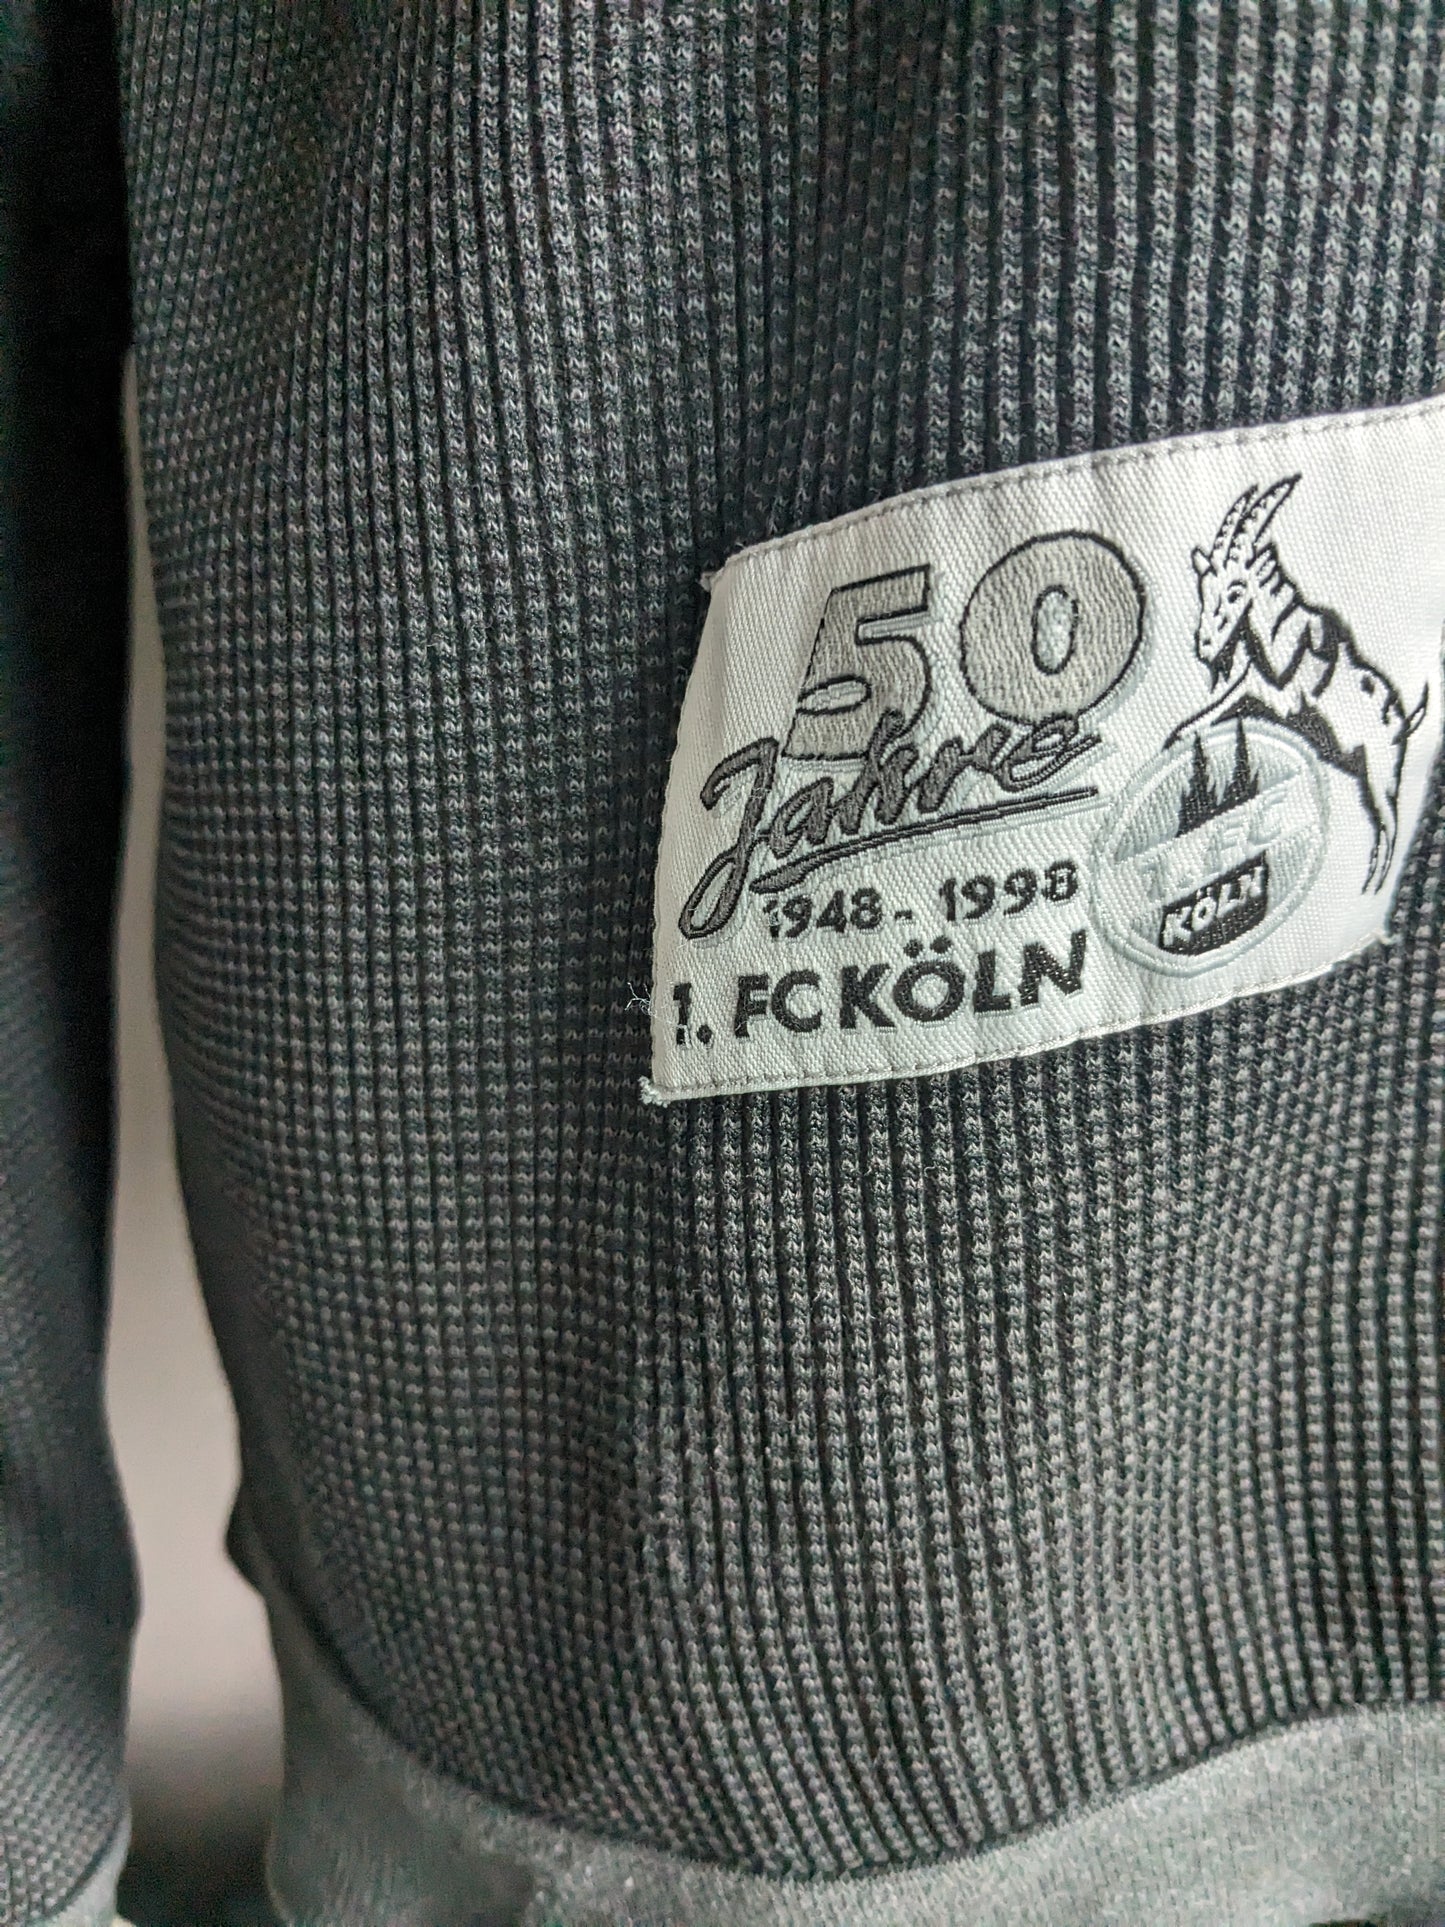 Jubilee único FC Köln suéter con cremallera. "50 años FC Köln". Color gris oscuro. Tamaño xl.